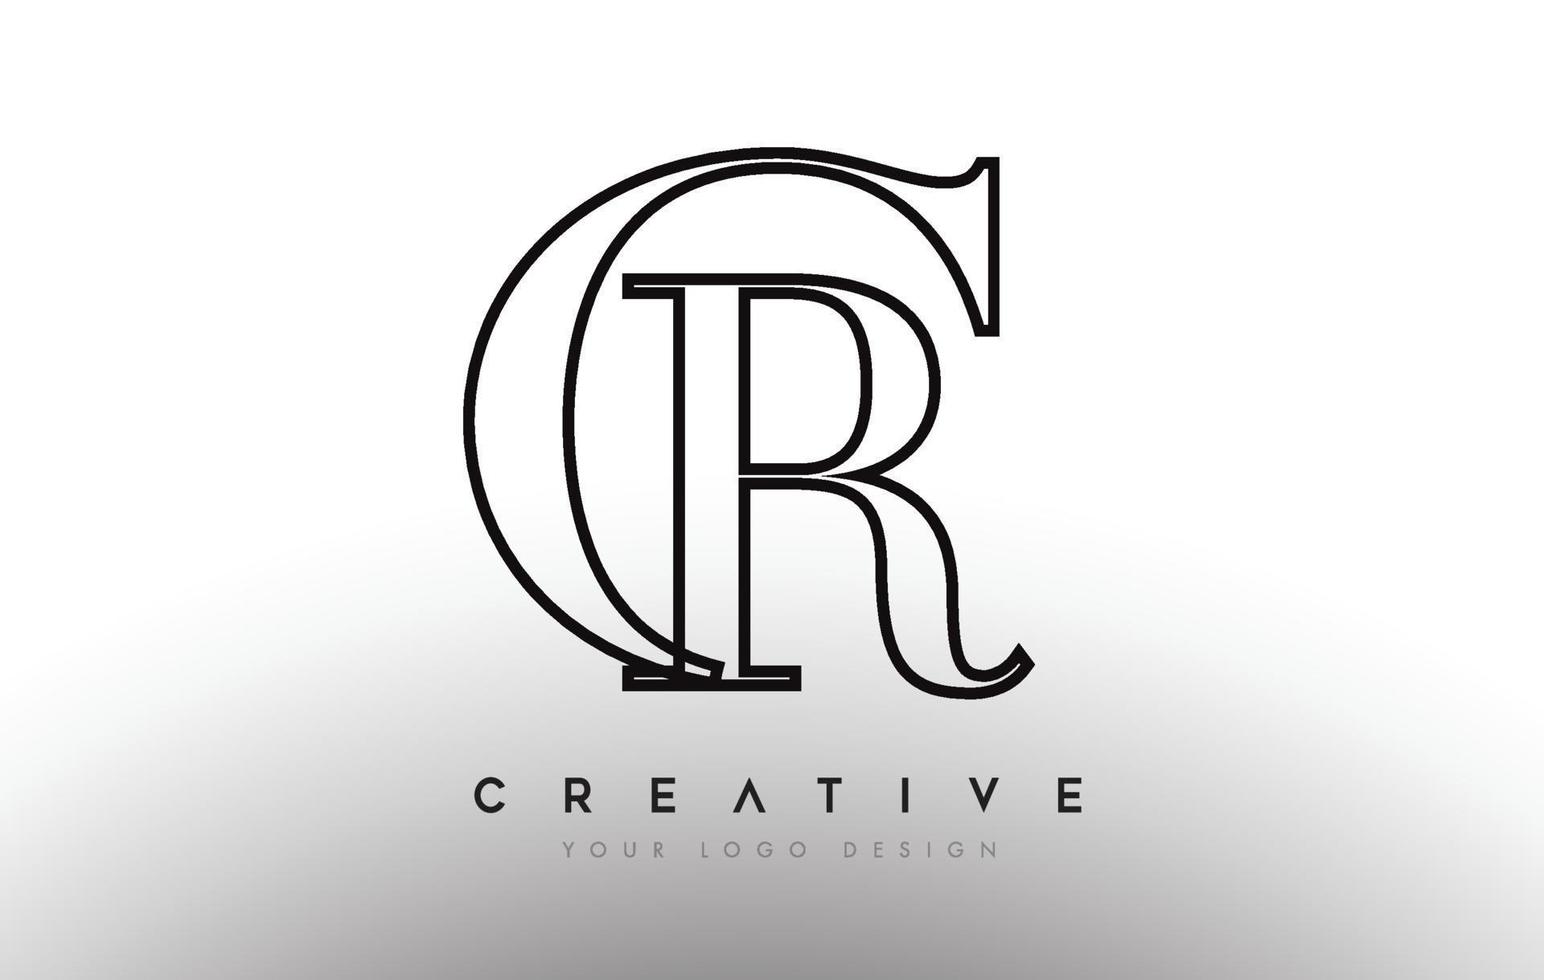 cr cr brief design logo logotype icon konzept mit serifenschrift und klassisch elegantem look vektor